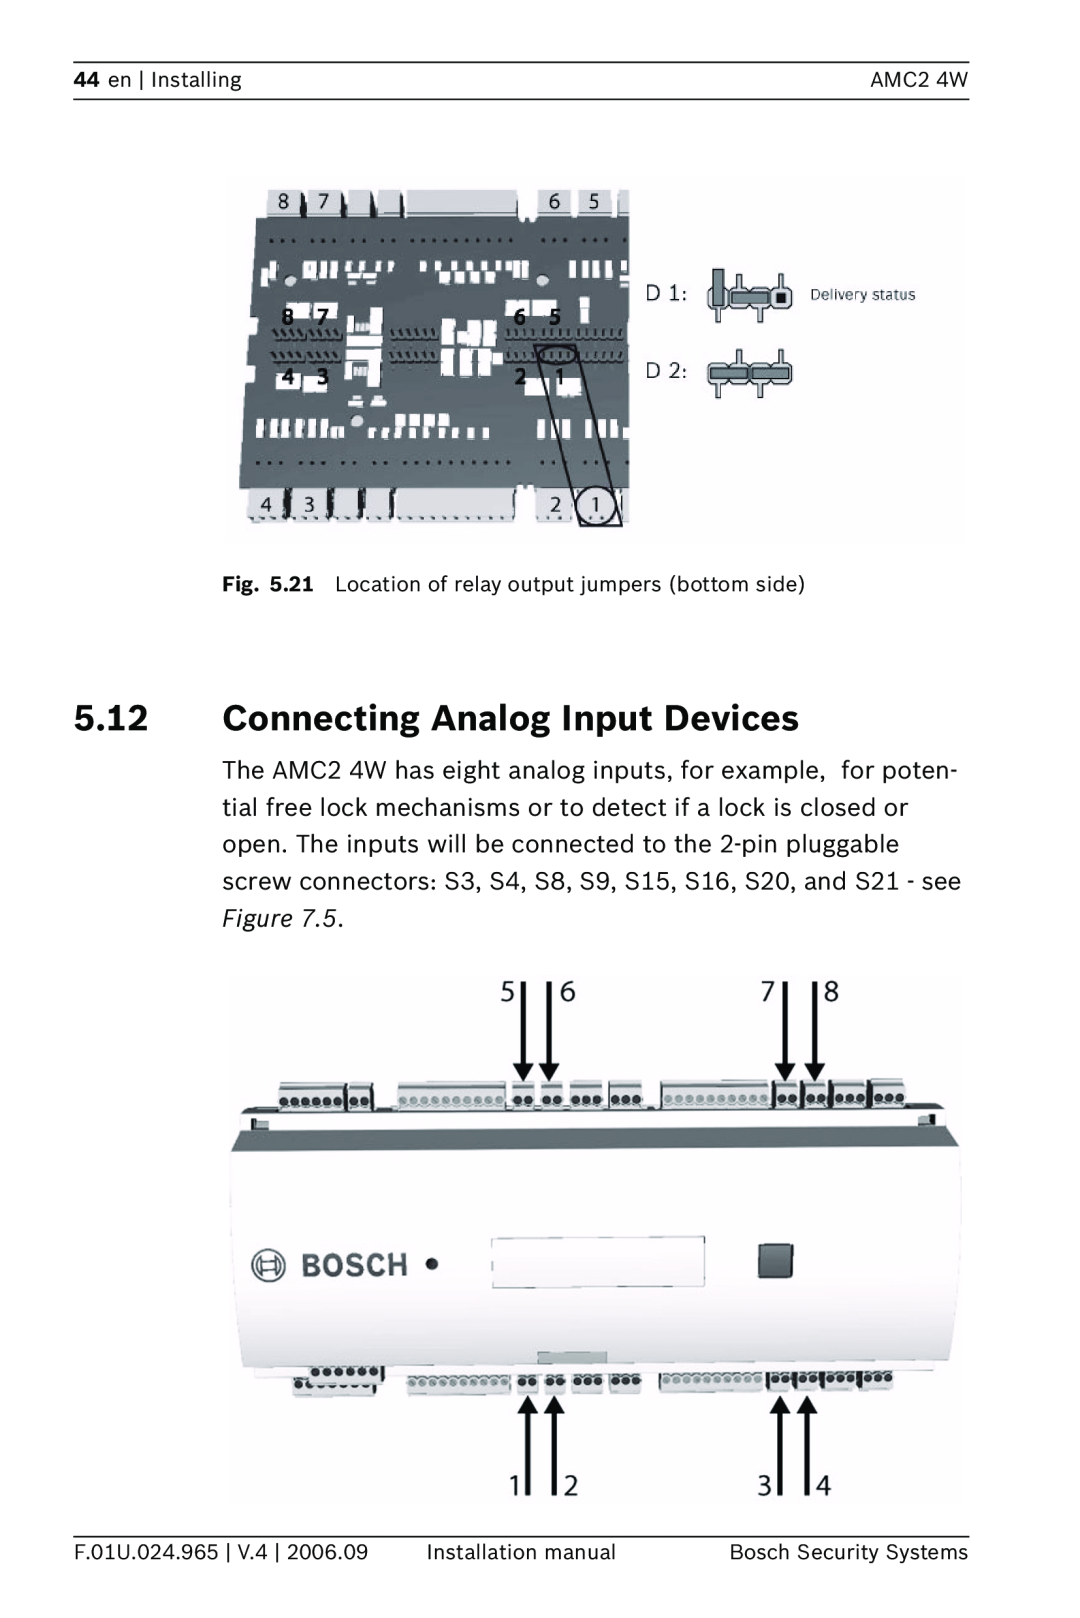 Bosch Appliances APC-AMC2-4W 5.12Connecting Analog Input Devices, en Installing, AMC2 4W, F.01U.024.965 | V.4 